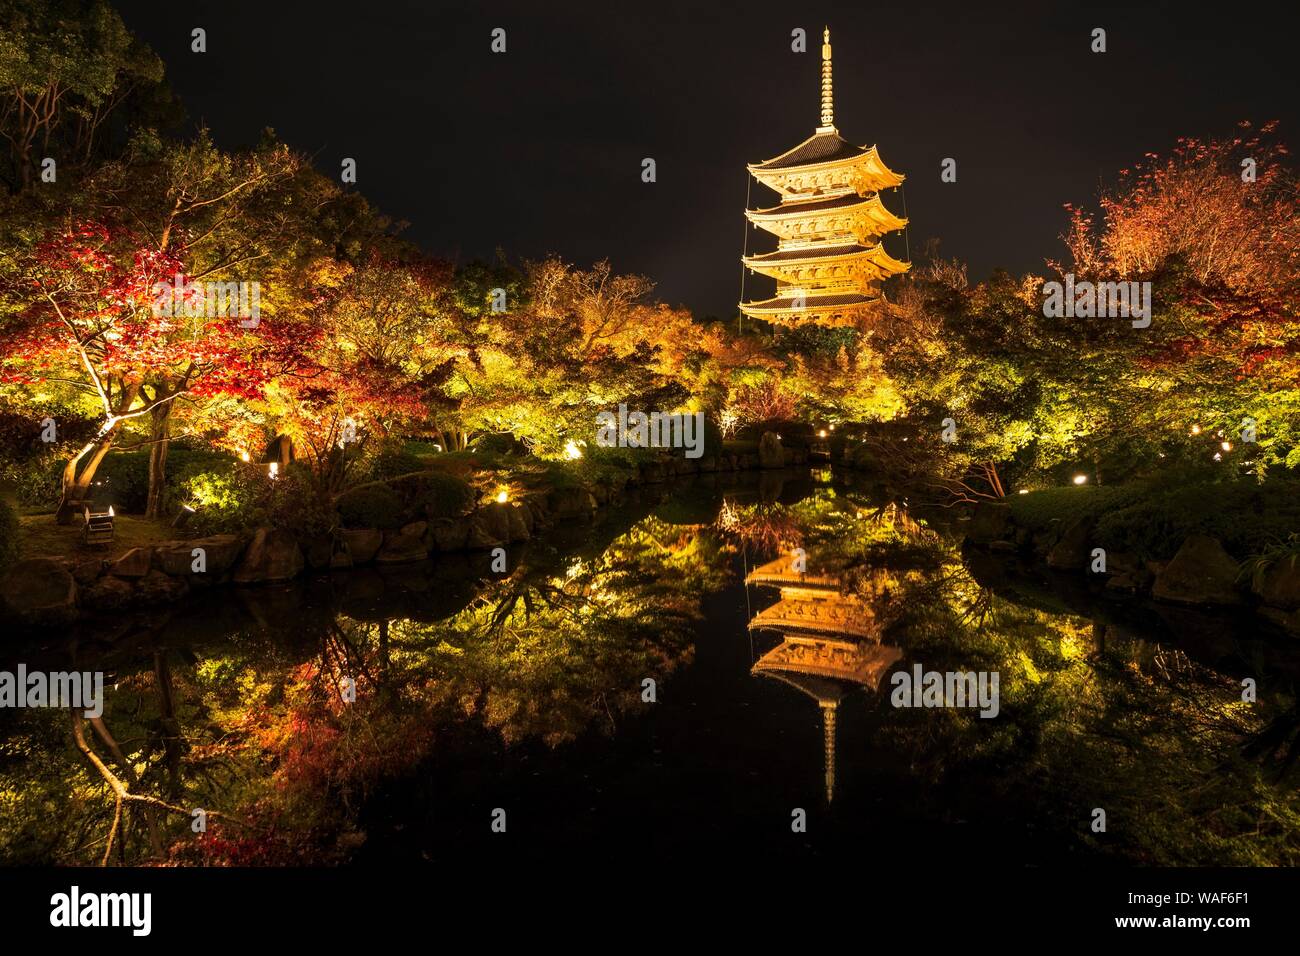 Pagode à Cinq étages du temple Toji avec coloration à l'automne, illuminé la nuit, Kyoto, Japon Banque D'Images